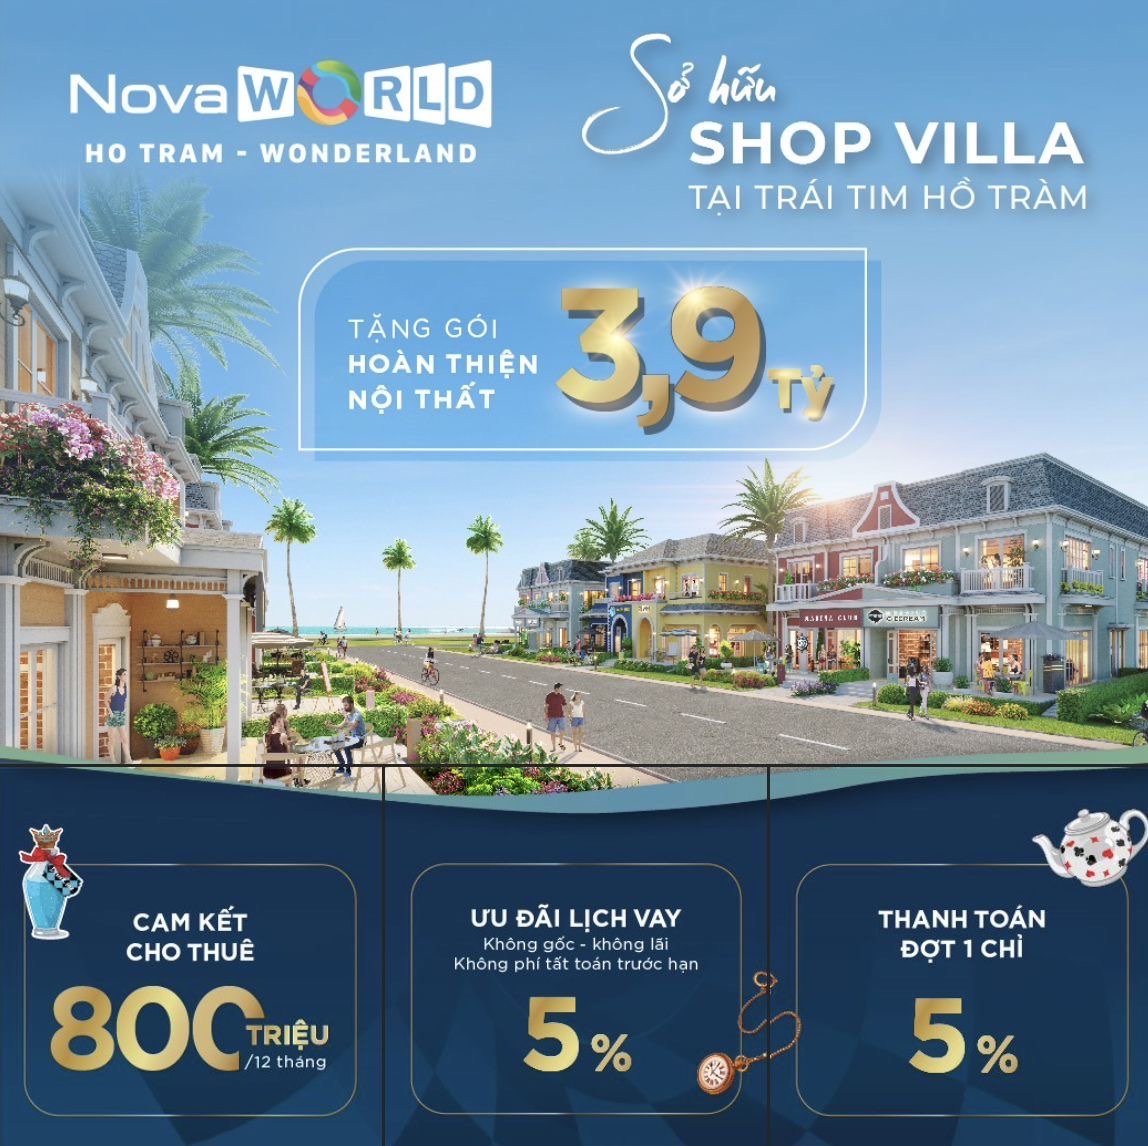 Mở bán Shop villa Wonderland của Nova world Hồ Tràm chỉ 9,8 tỷ/căn Cam kết thuê 800tr/năm 3